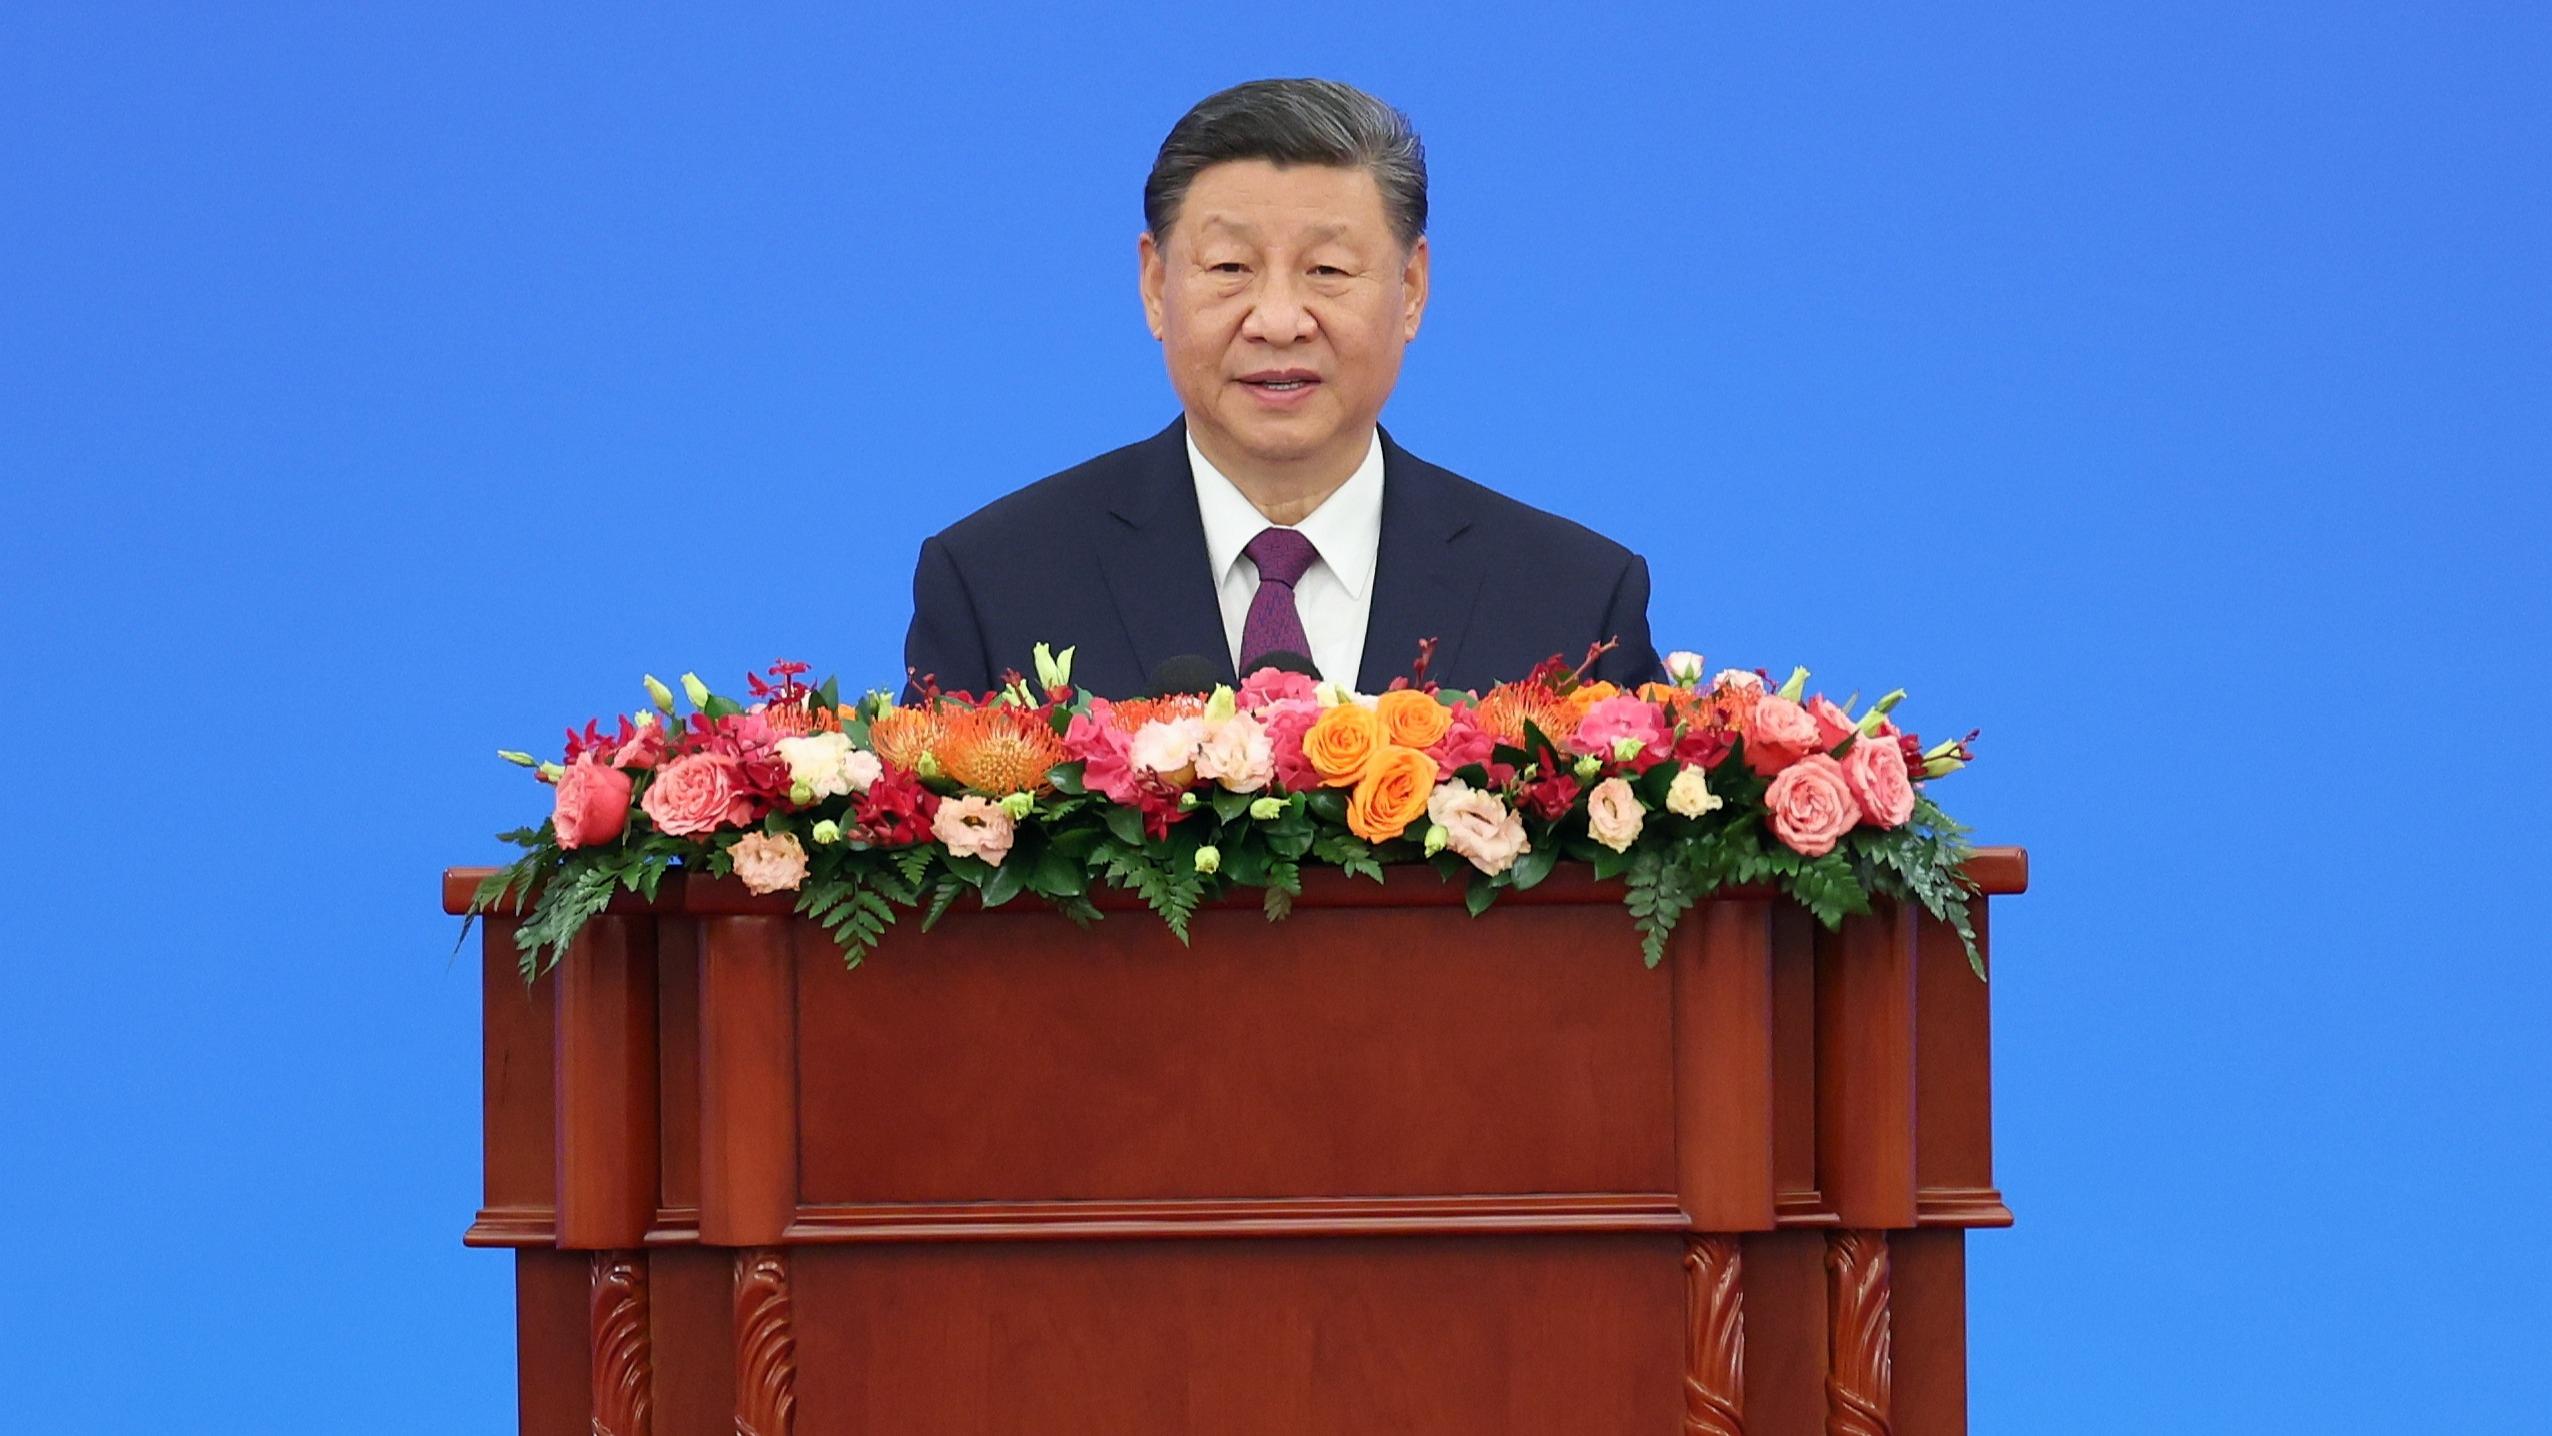 سخنرانی رهبر چین در کنفرانس گرامیداشت هفتادمین سالگرد انتشار اصول پنجگانه همزیستی مسالمت آمیزا